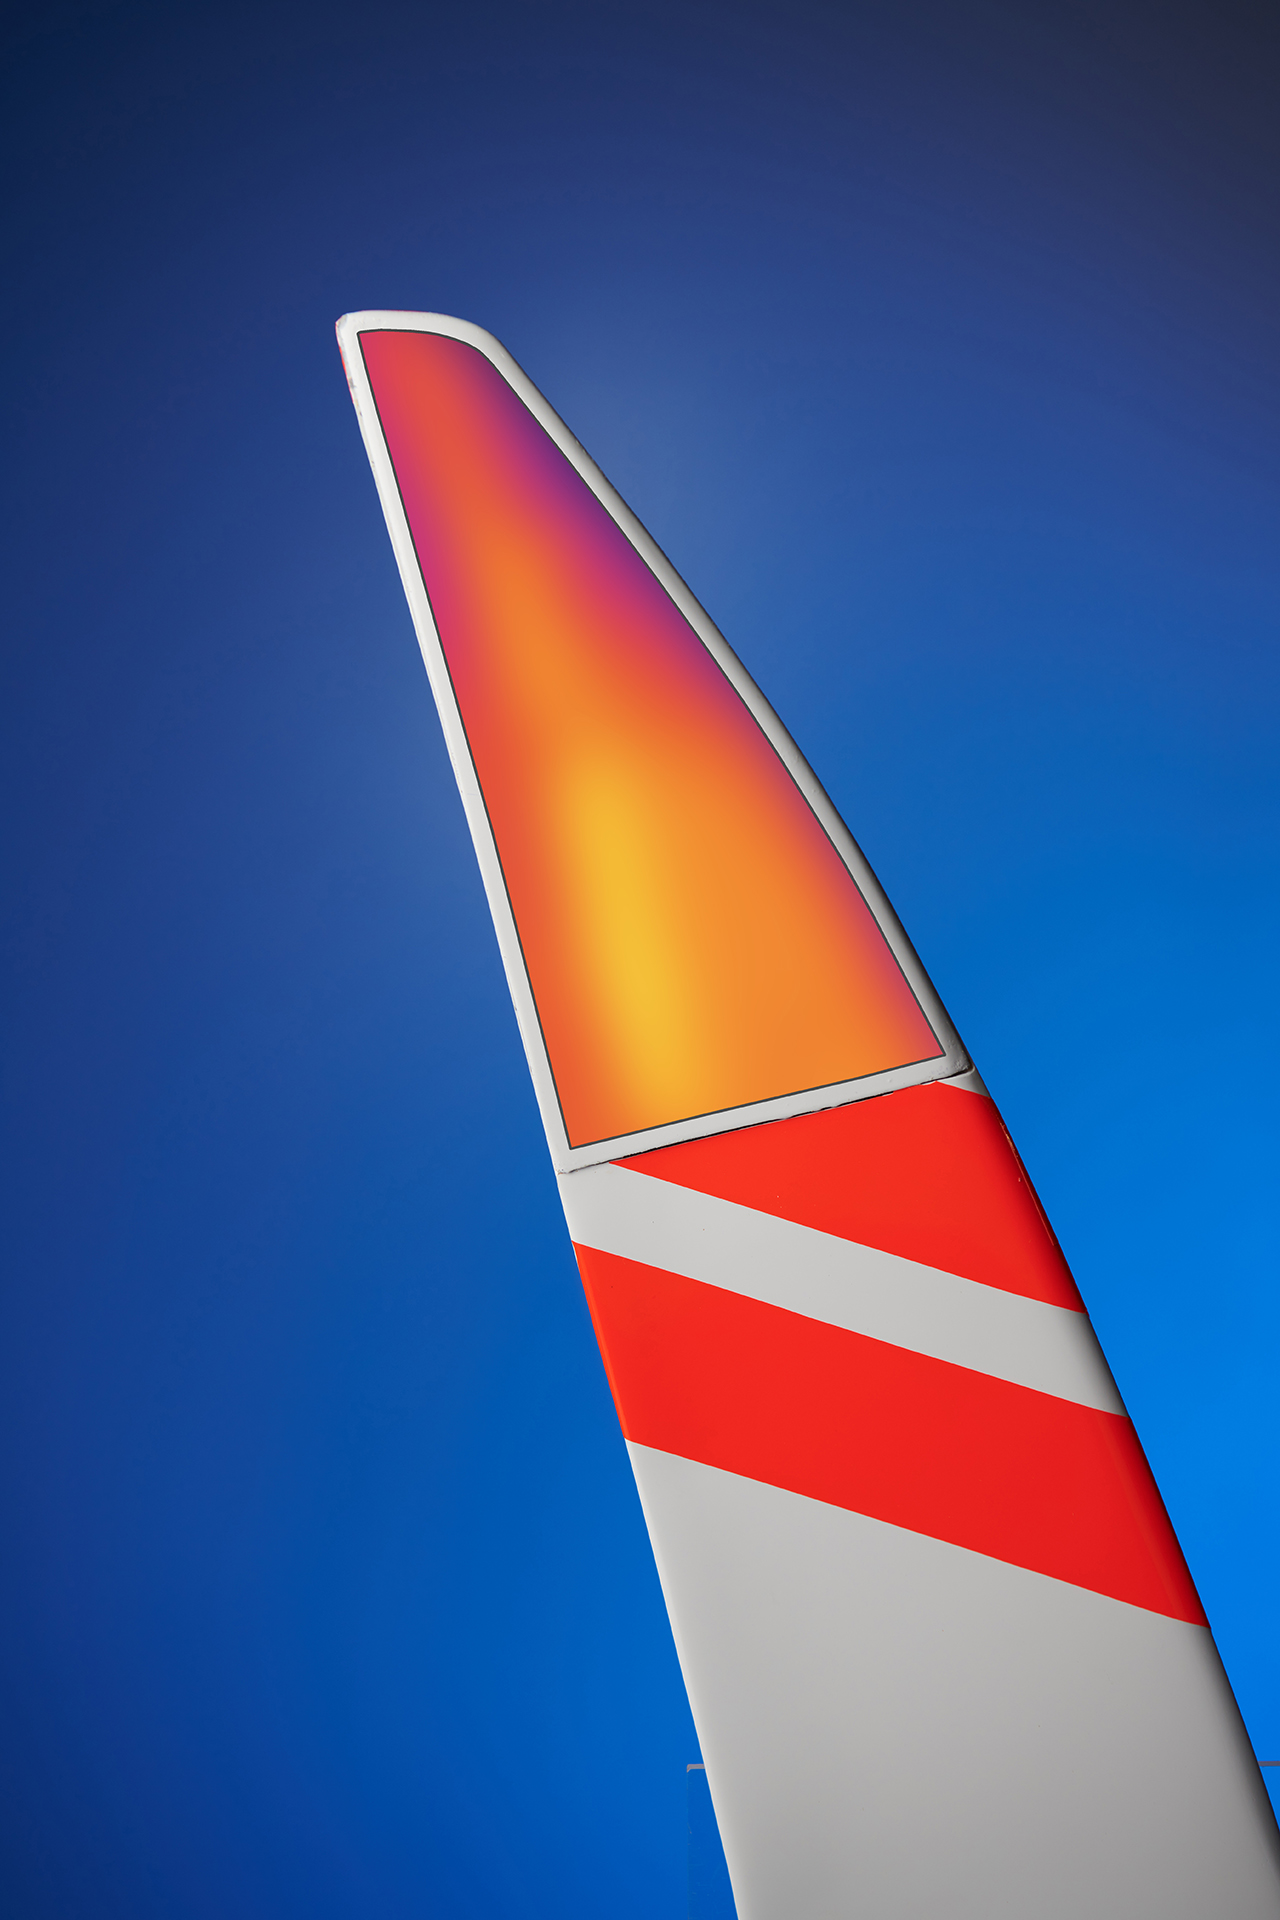 Mittels dieser Bildmontage lässt sich die beheizte Oberfläche eines Flugzeugflügels veranschaulichen. Der obere farbige Teil symbolisiert eine Falschfarbenaufnahme, die mit einer Thermografiekamera entstanden ist.